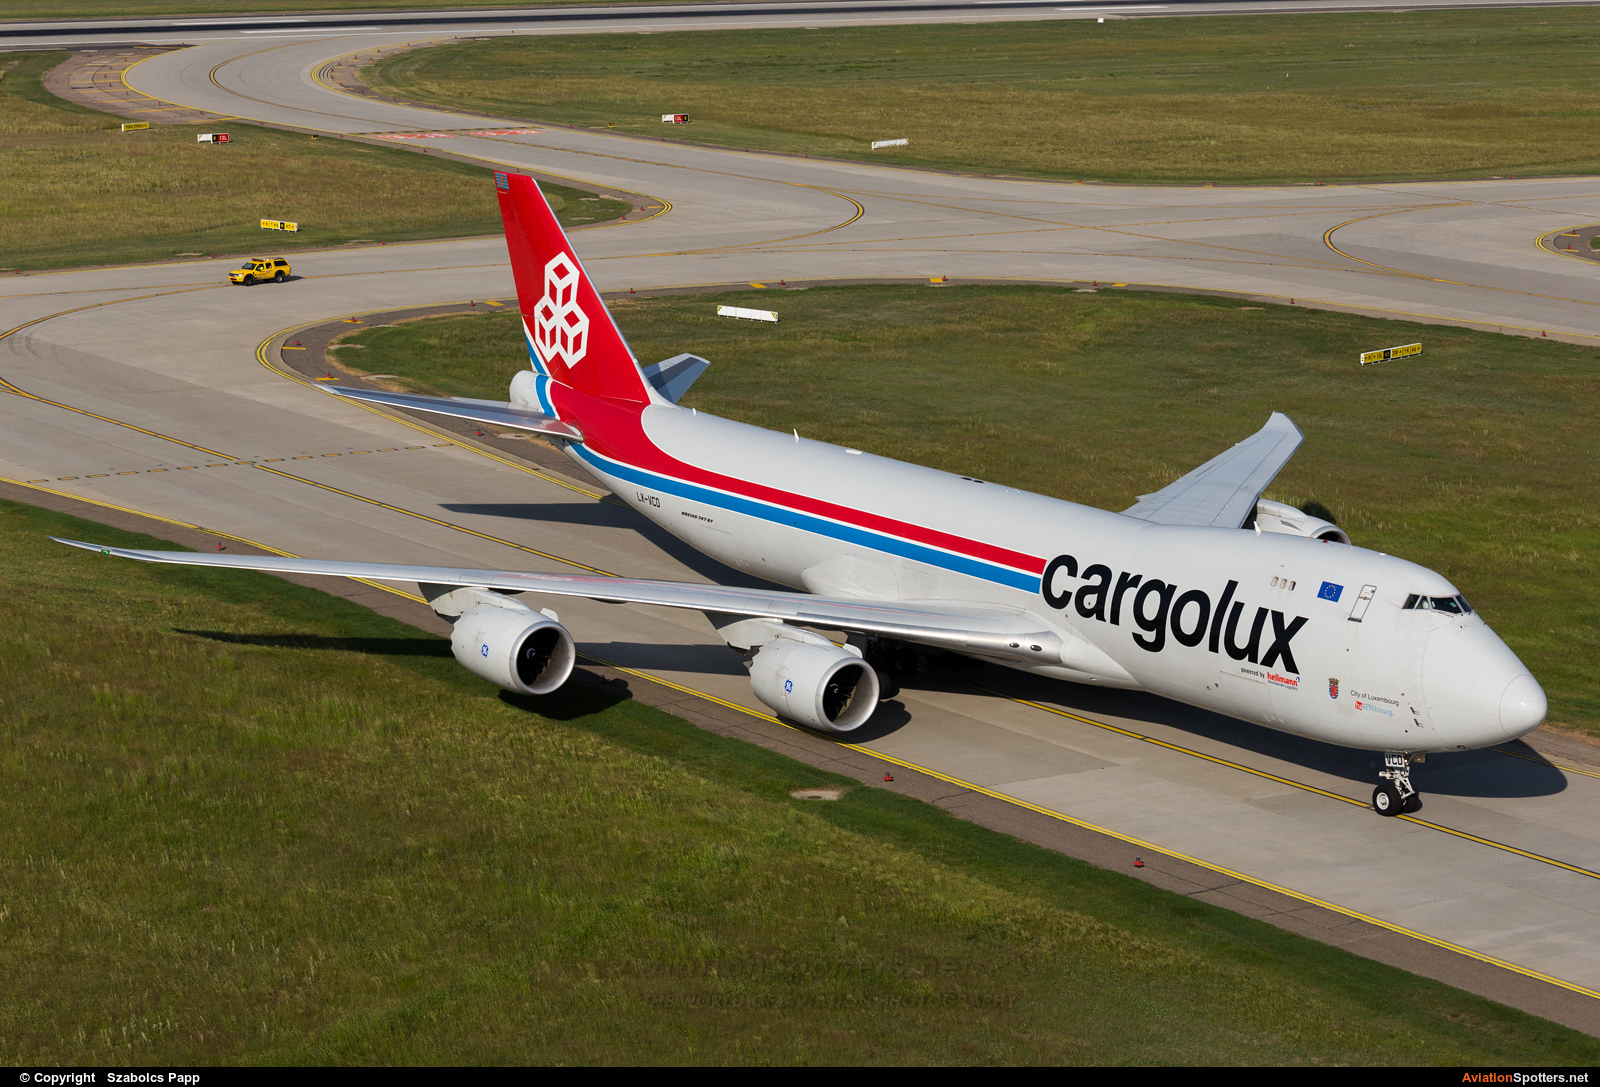 Cargolux  -  747-8R7F  (LX-VCD) By Szabolcs Papp (mr.szabi)